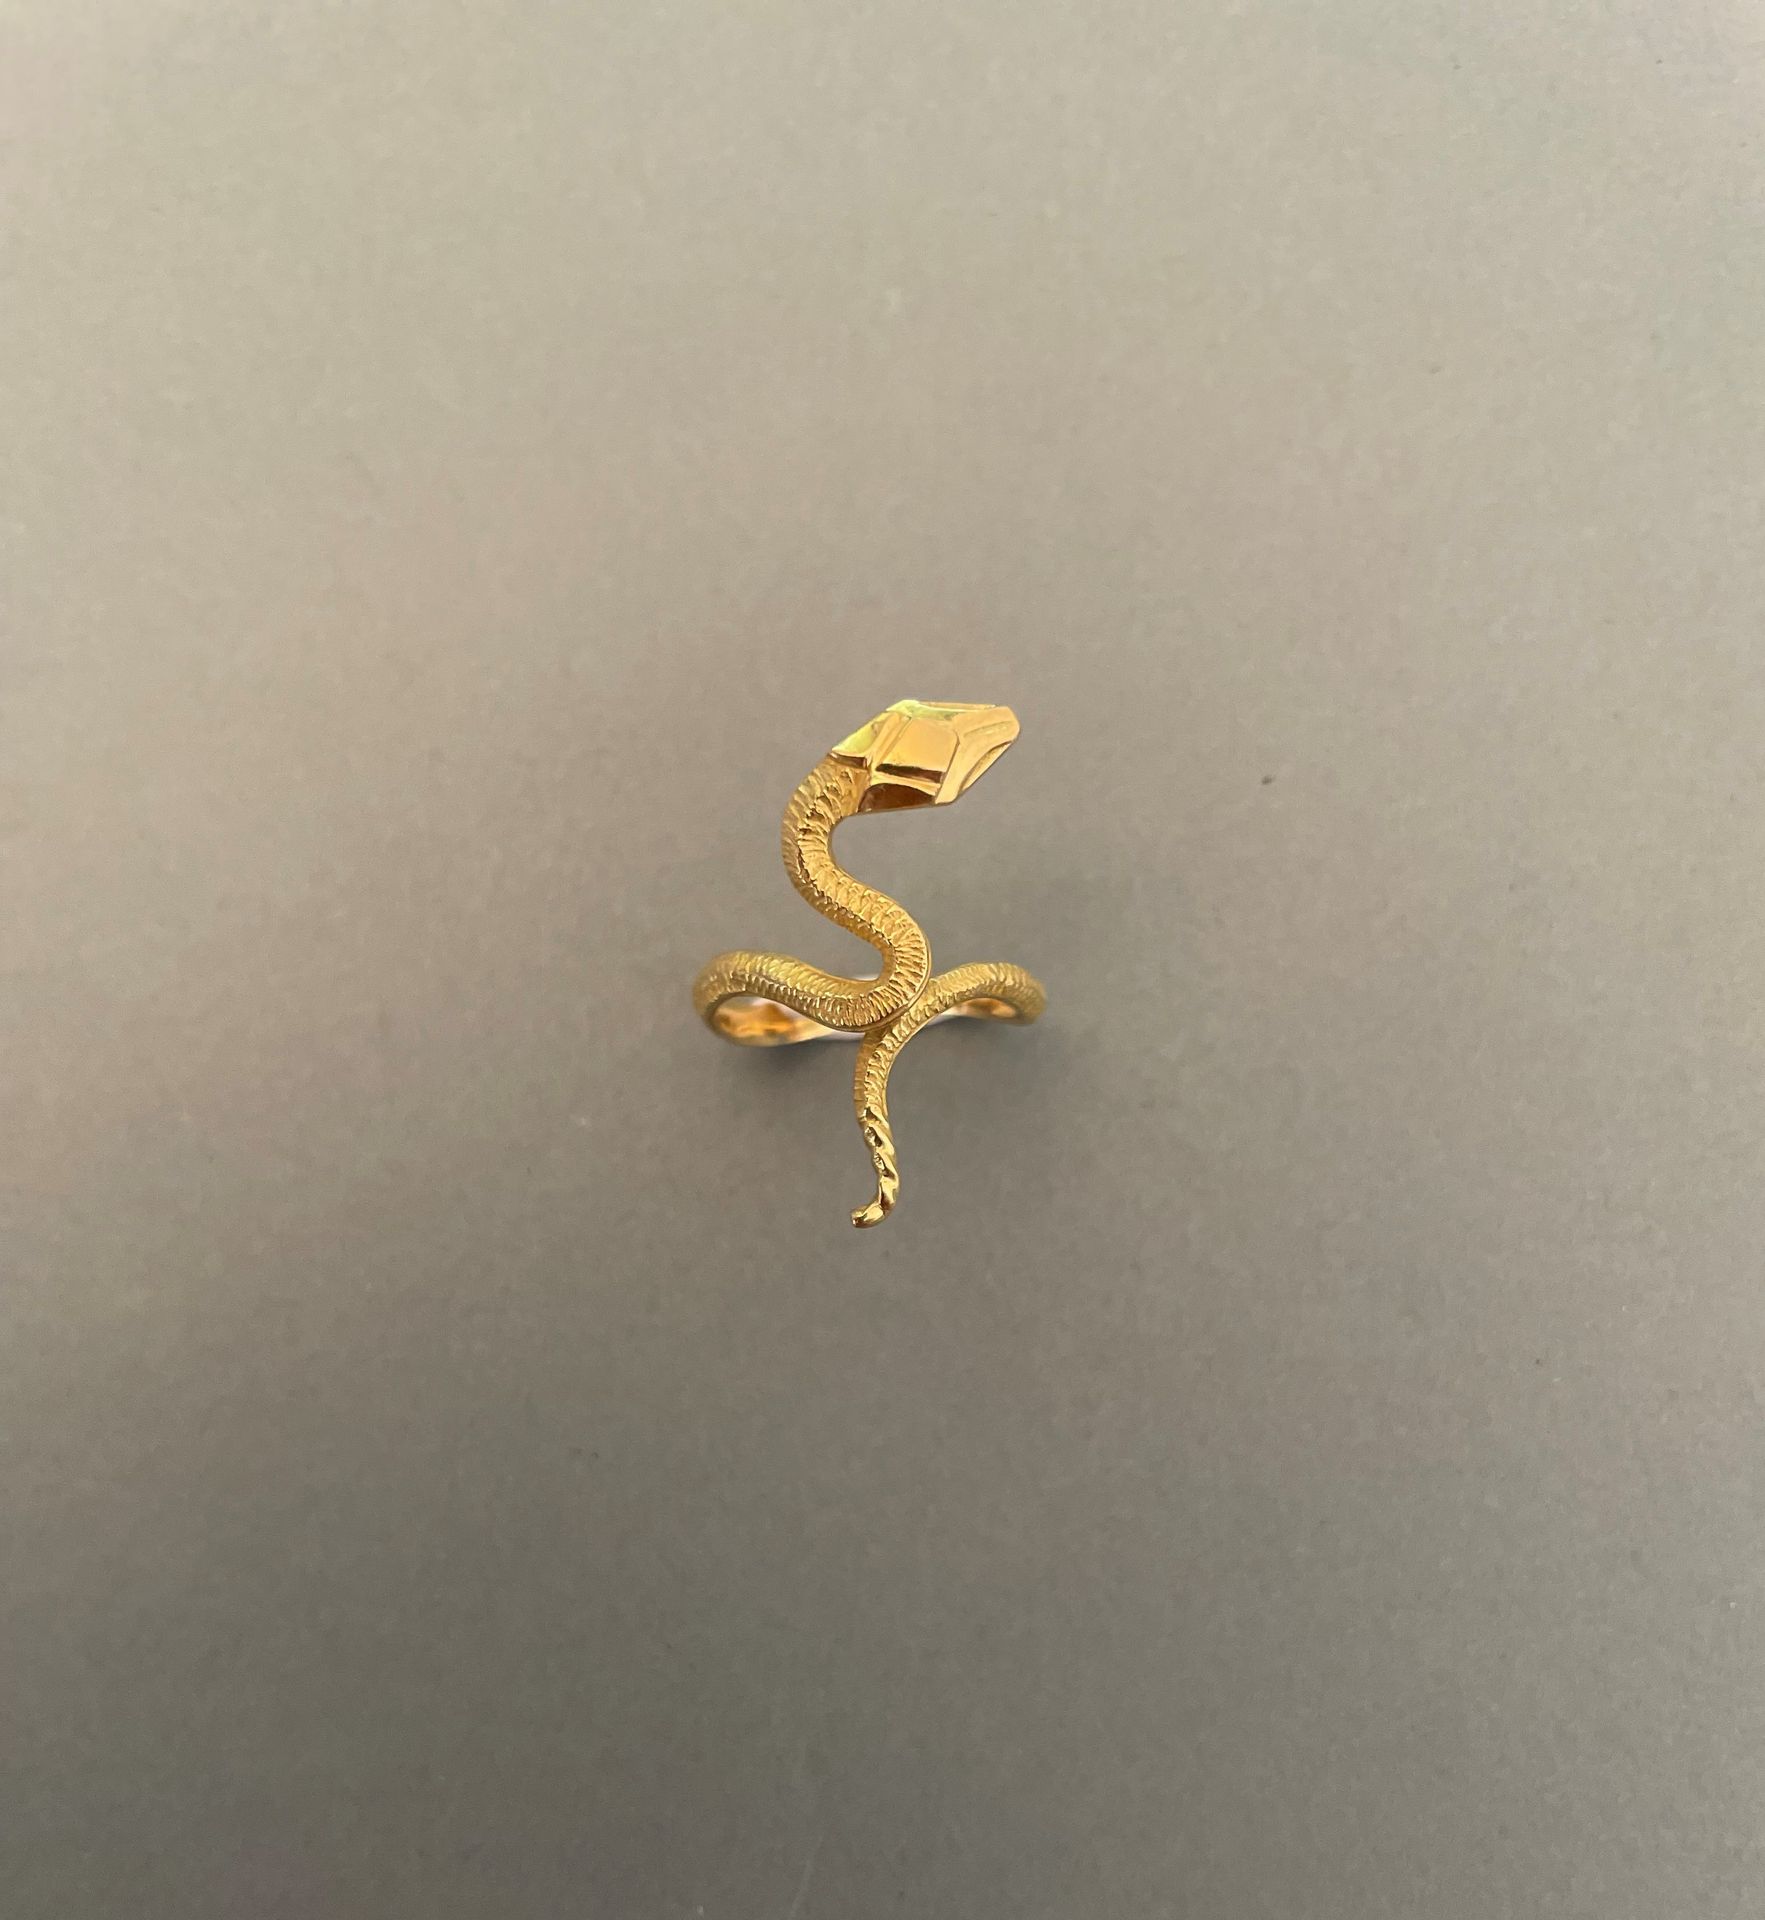 Null Schlangenring aus Gelbgold. 

Gewicht : 3,5 g.